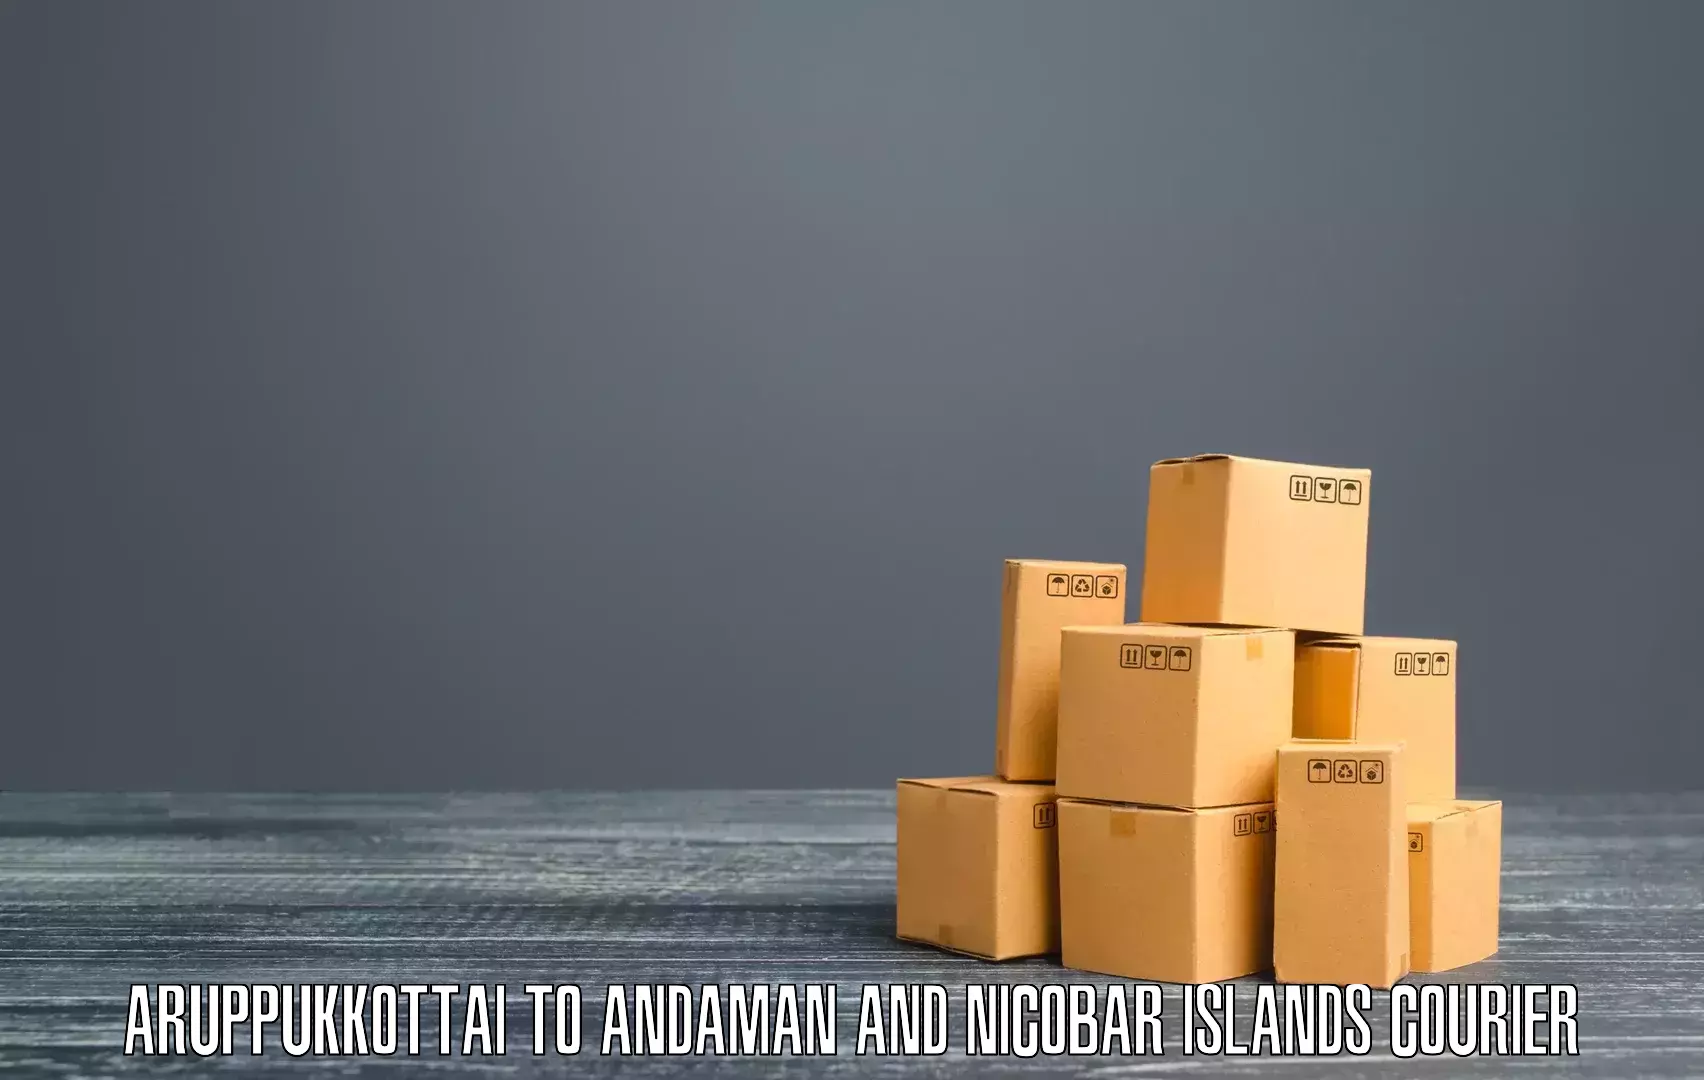 High-performance logistics Aruppukkottai to Andaman and Nicobar Islands